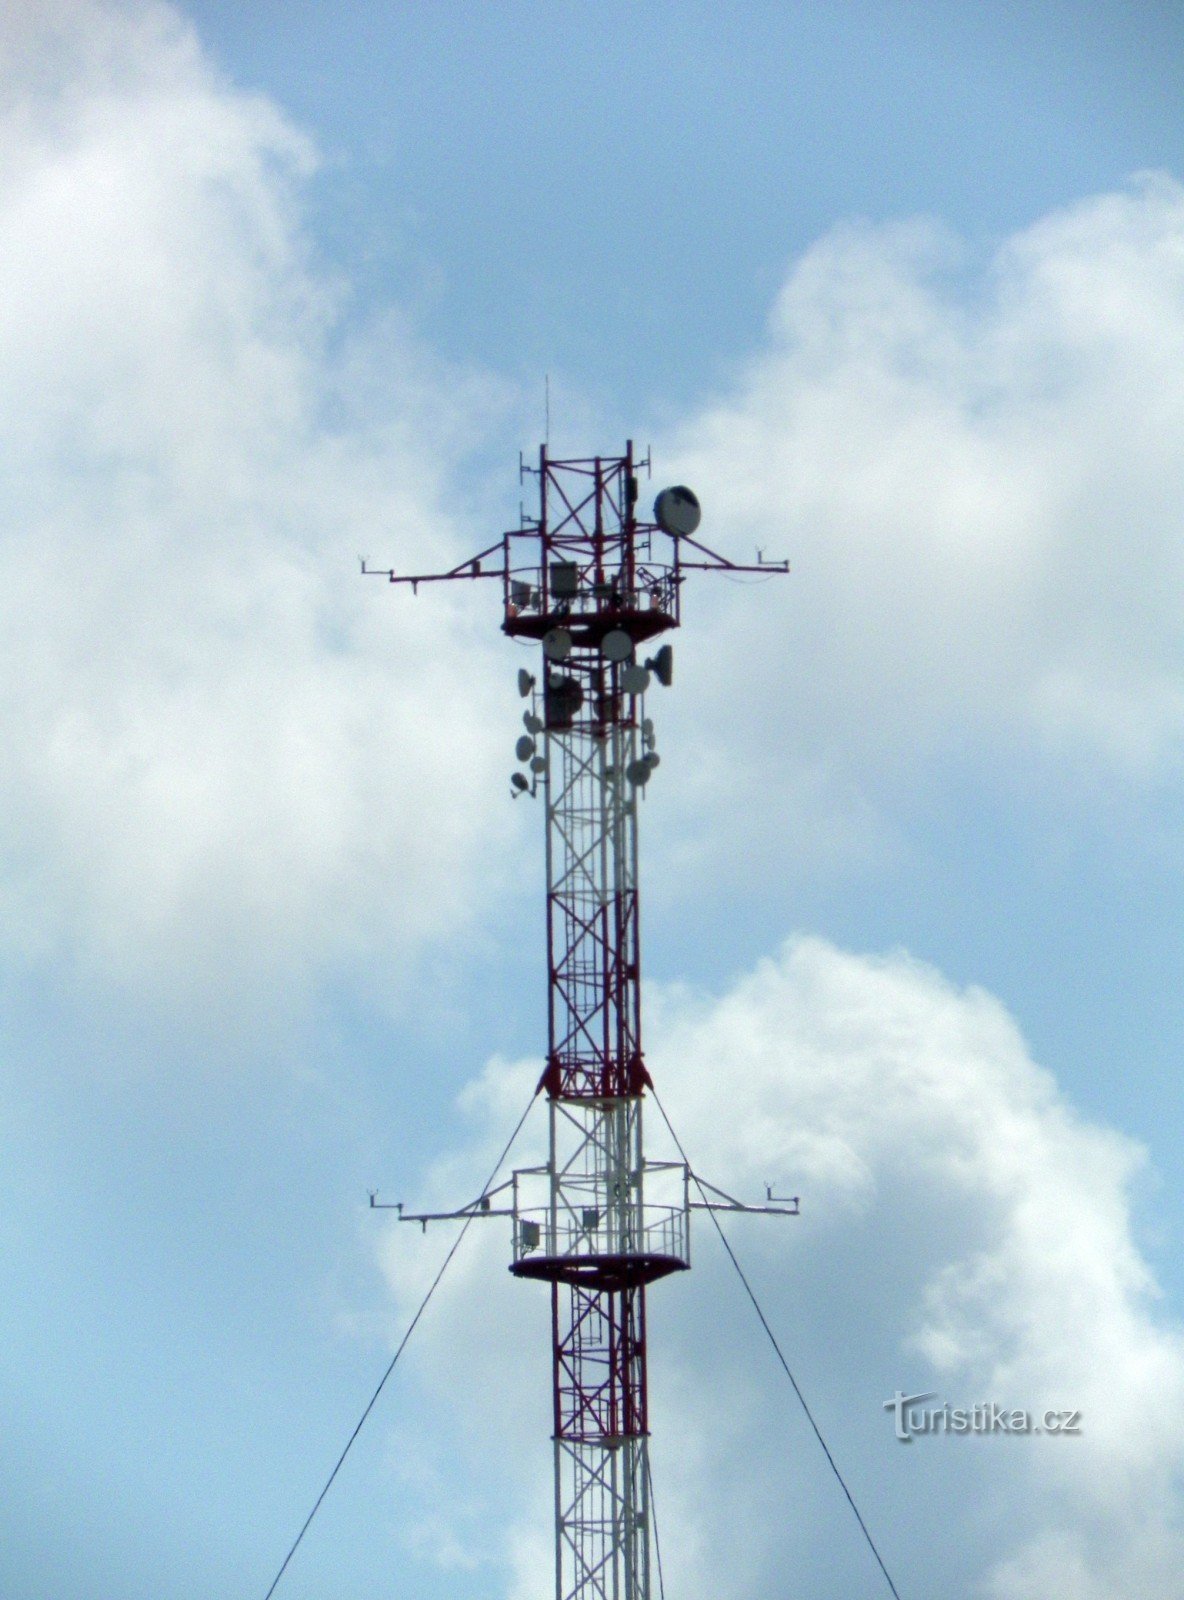 Detail van de top van de mast met een webcamera, meteometers en telecommunicatieantennes